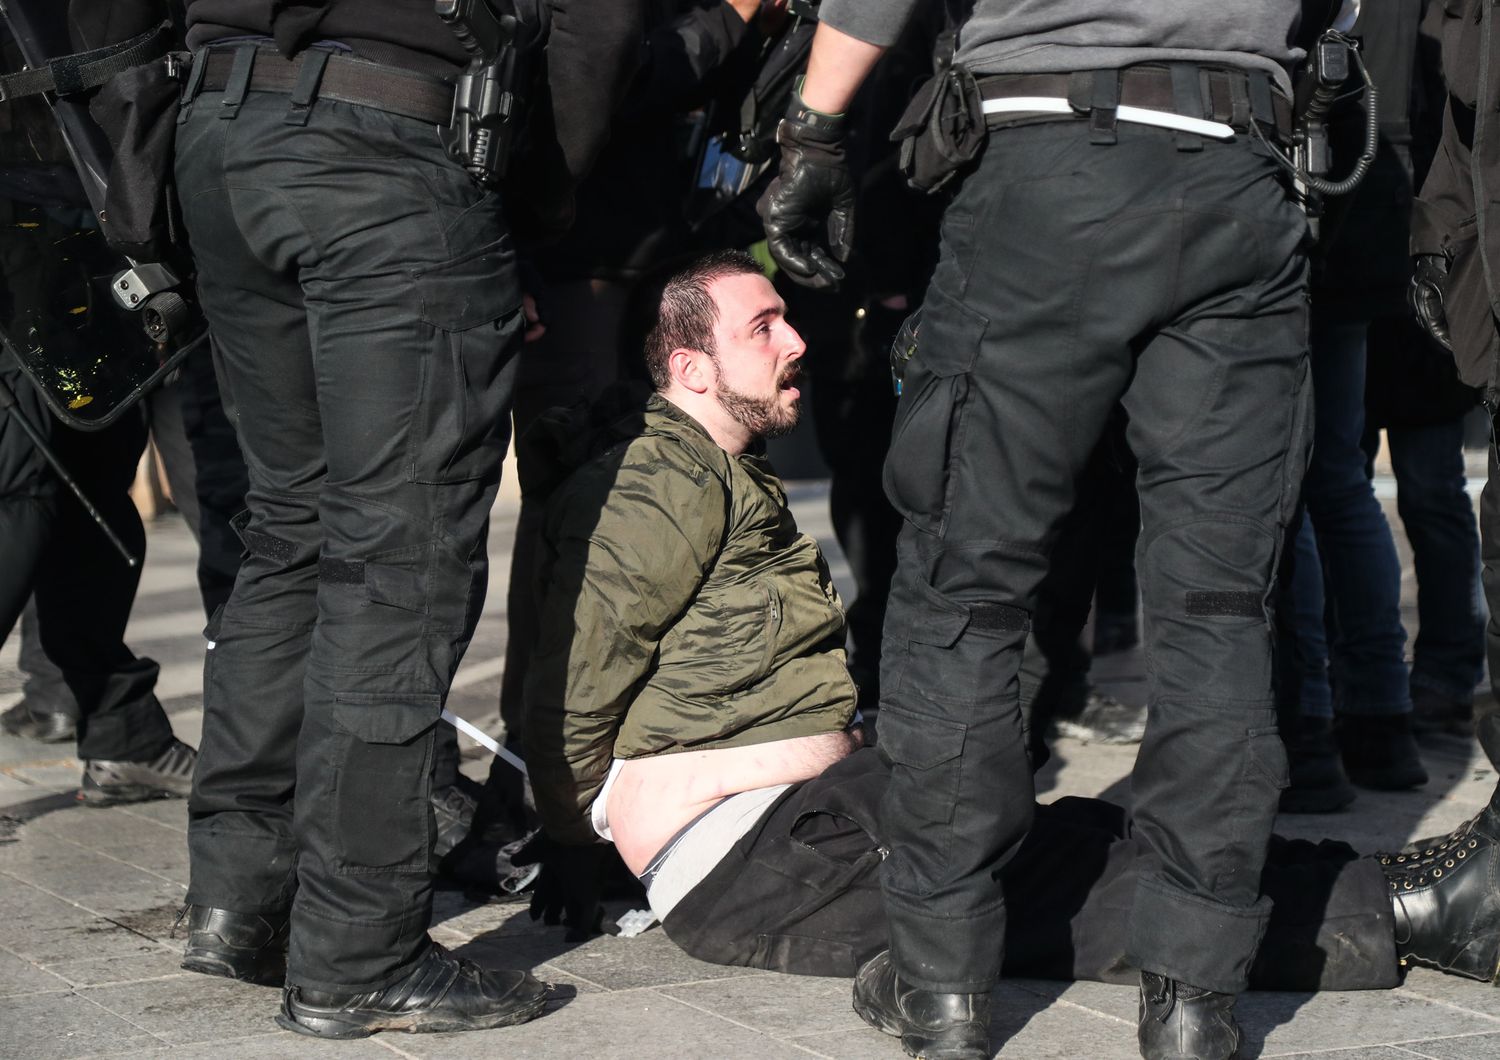 Polizia arresta manifestante sugli Champs Elisees